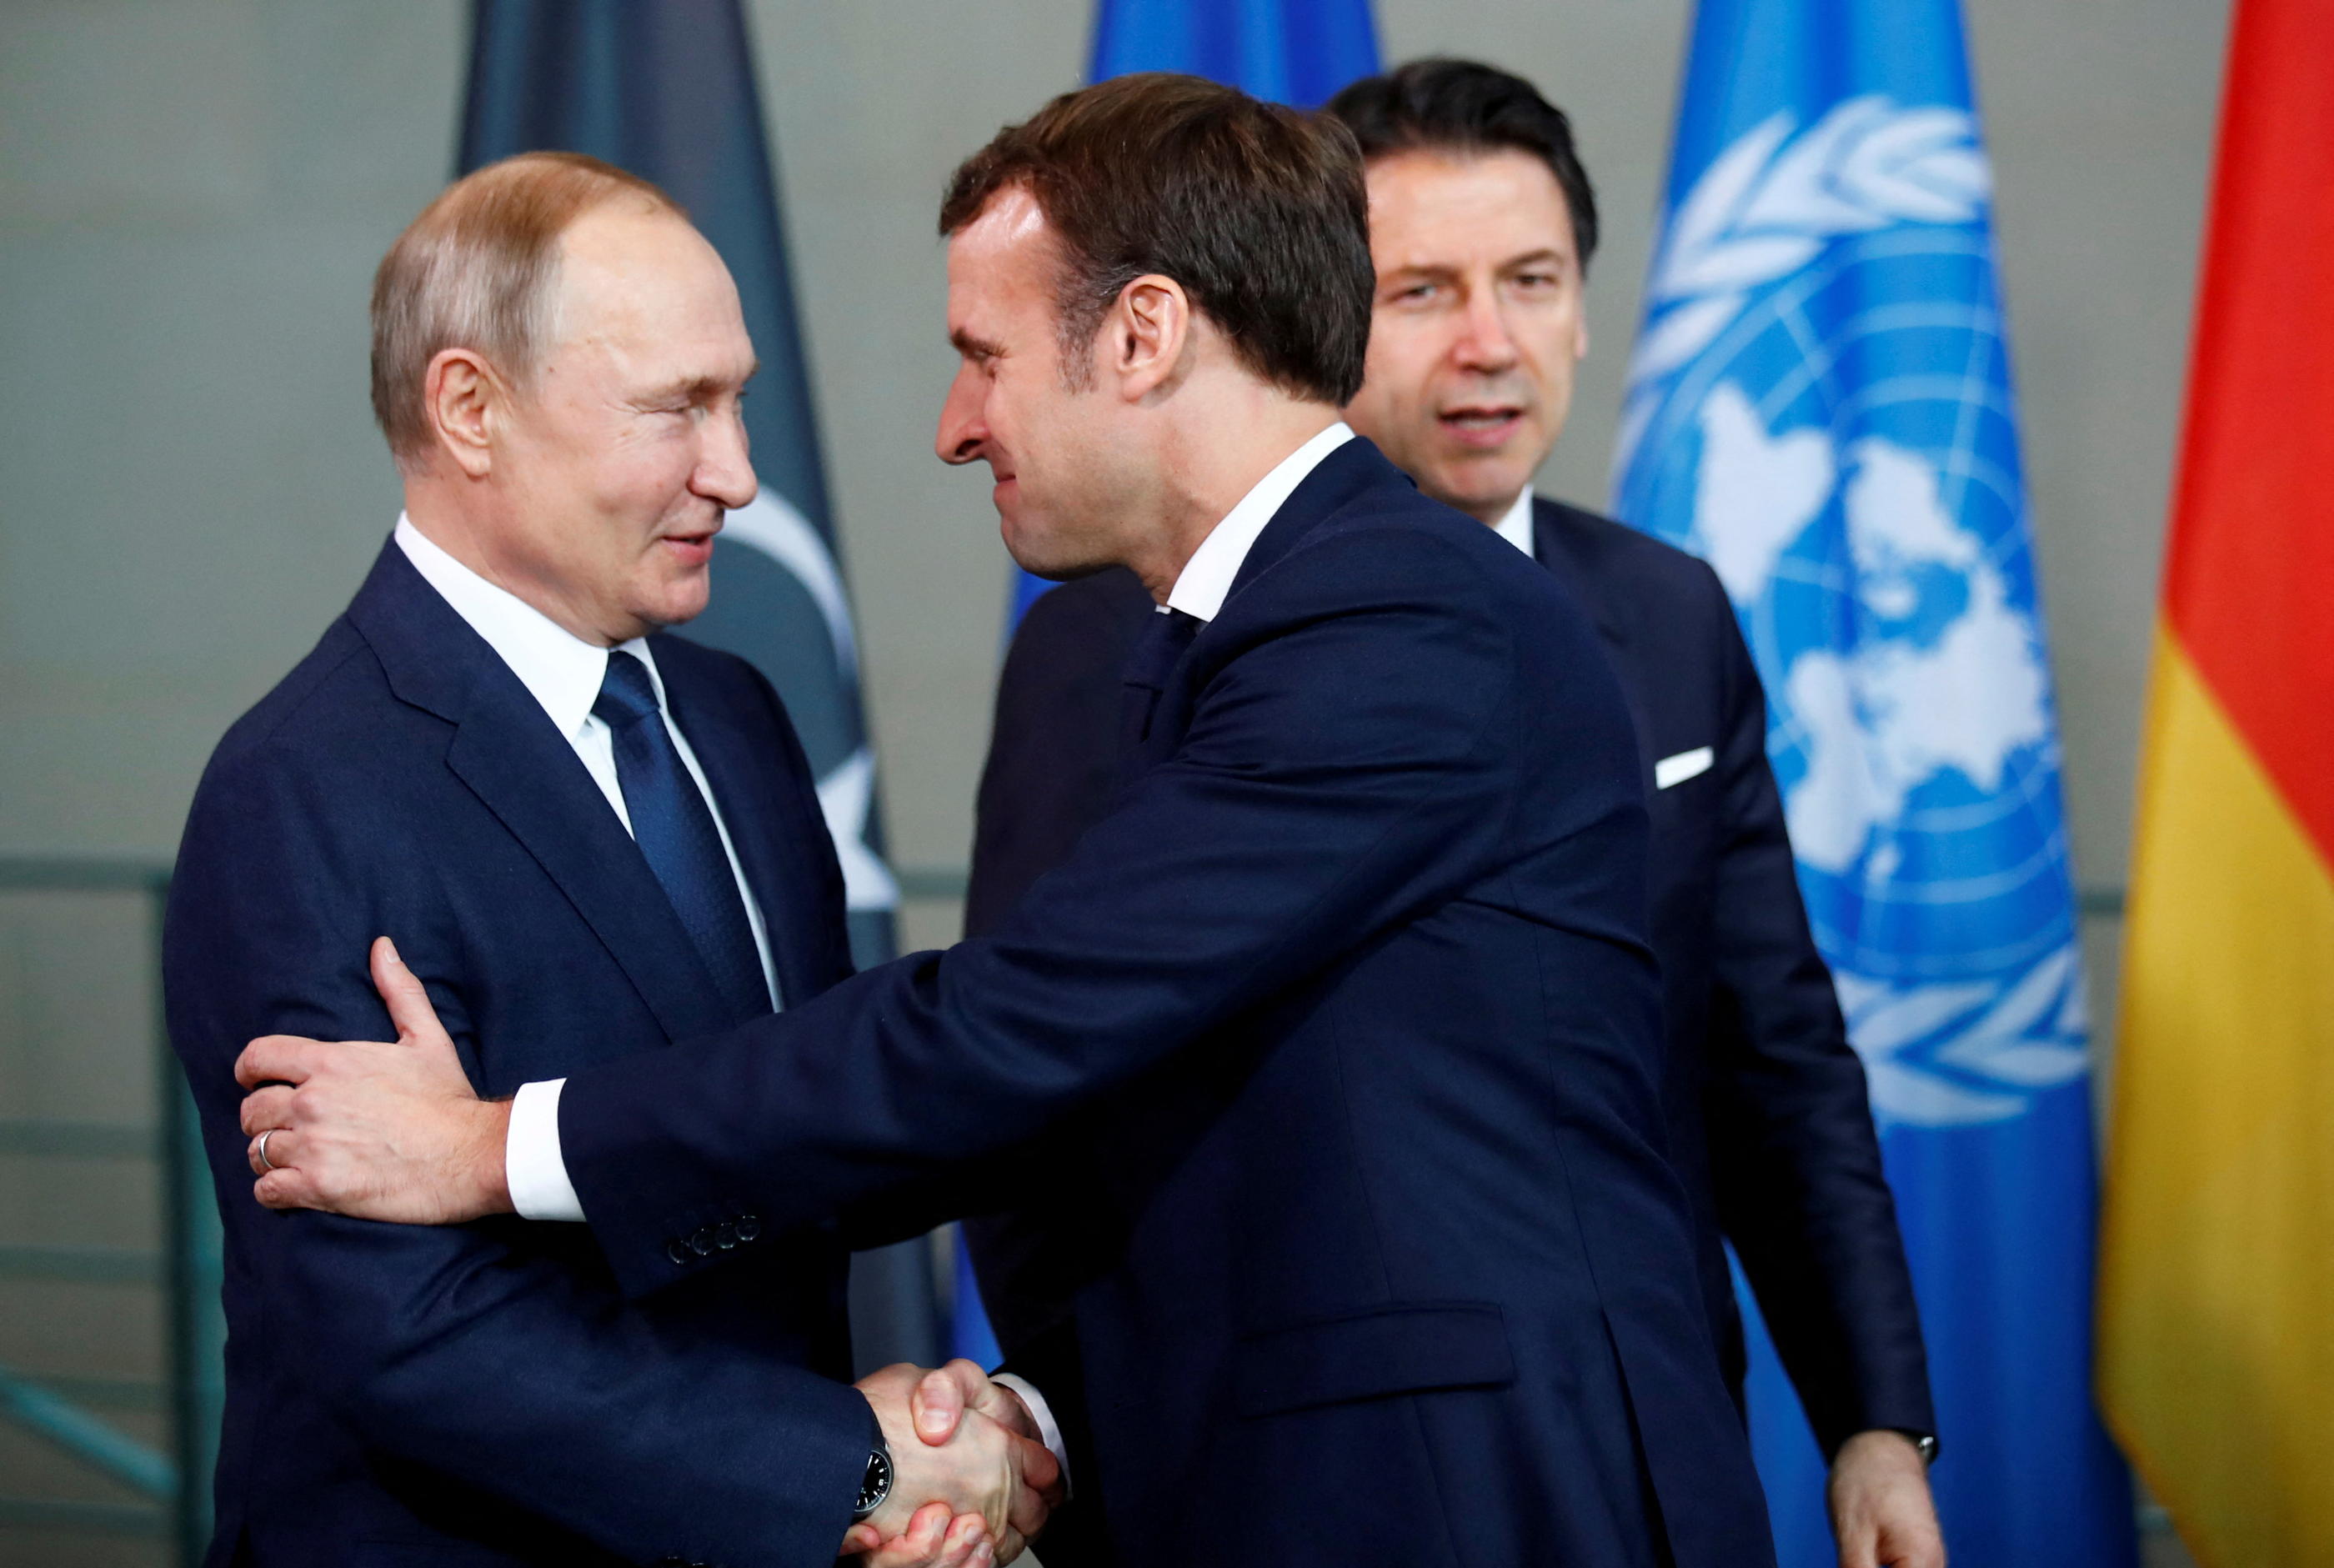 Vladimir Poutine et Emmanuel Macron à Berlin, en Allemagne, le 19 janvier 2020, lors d'un sommet sur la Libye. REUTERS/Hannibal Hanschke